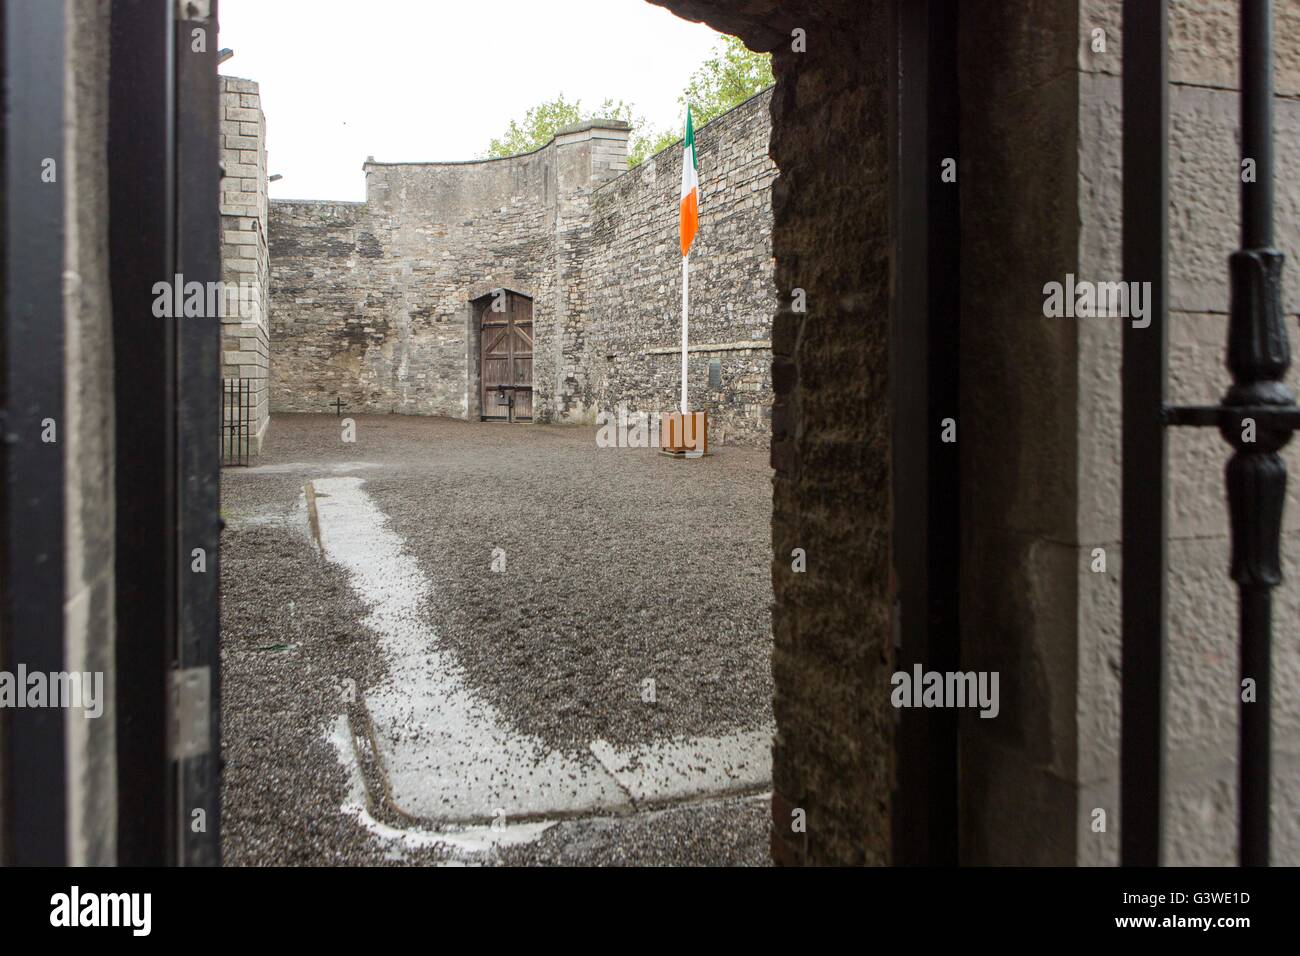 La prison de Kilmainham , Kilmainham, Dublin, Irlande. Cour intérieure où les membres de l'Insurrection de Pâques ont été exécutés par un peloton d'exécution Banque D'Images